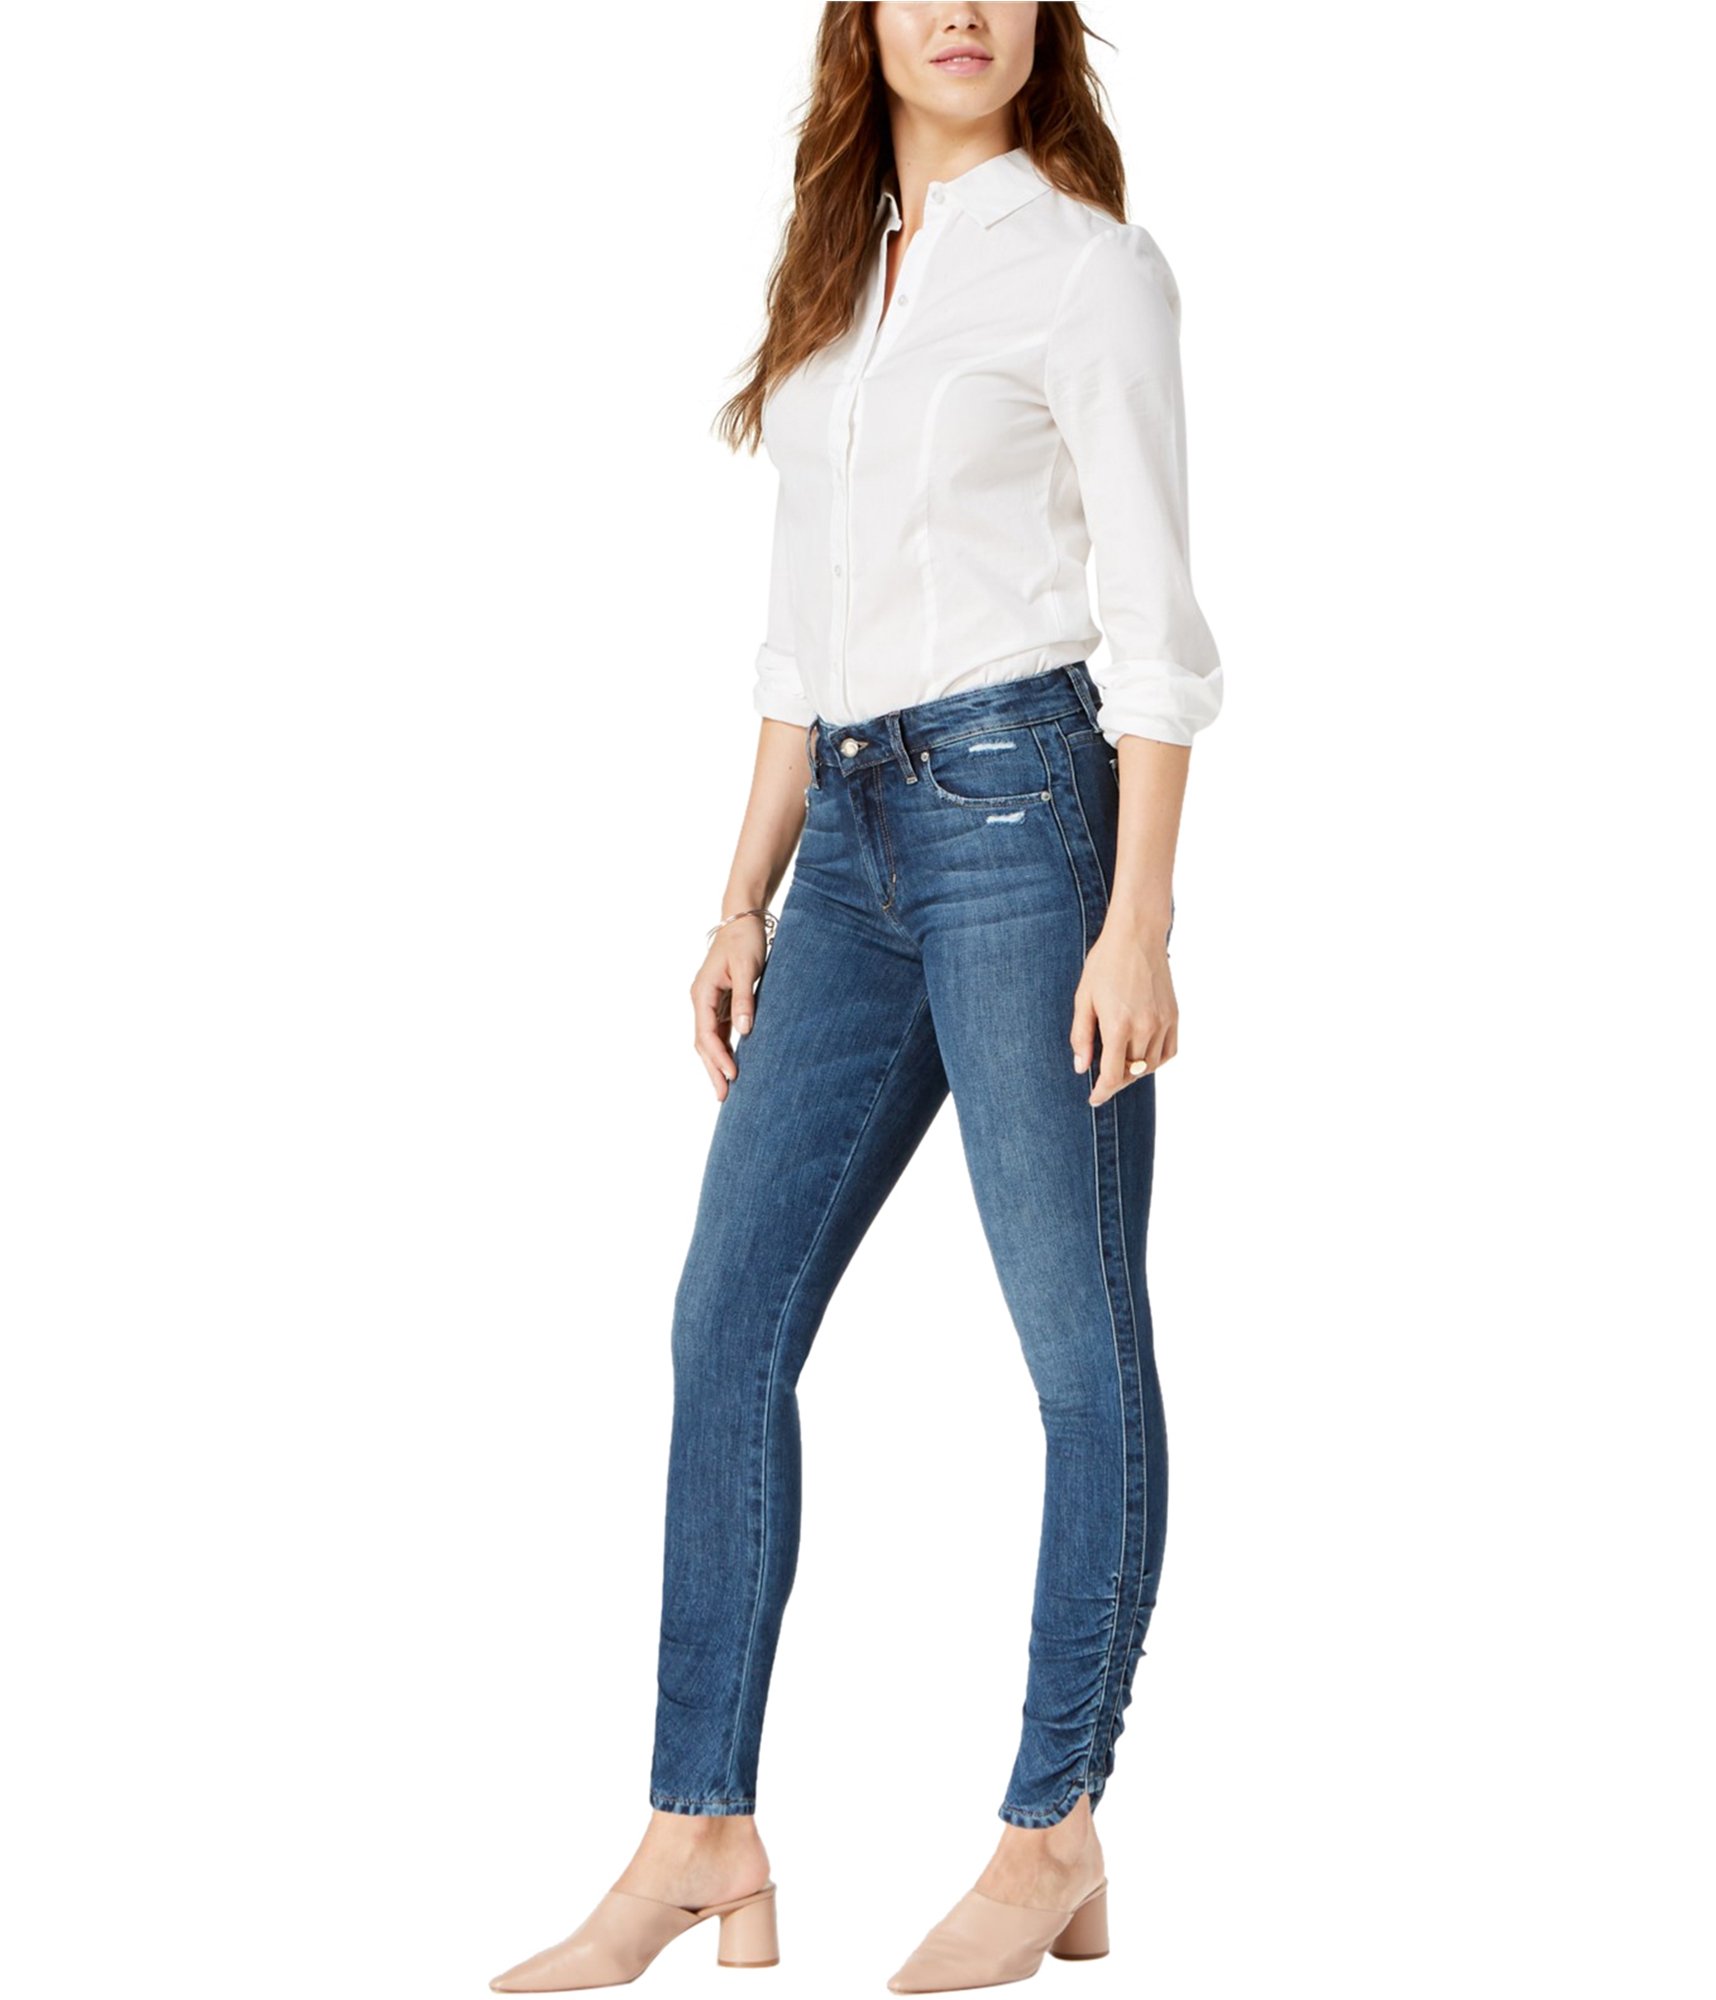 women-wearing-skinny-fit-jeans